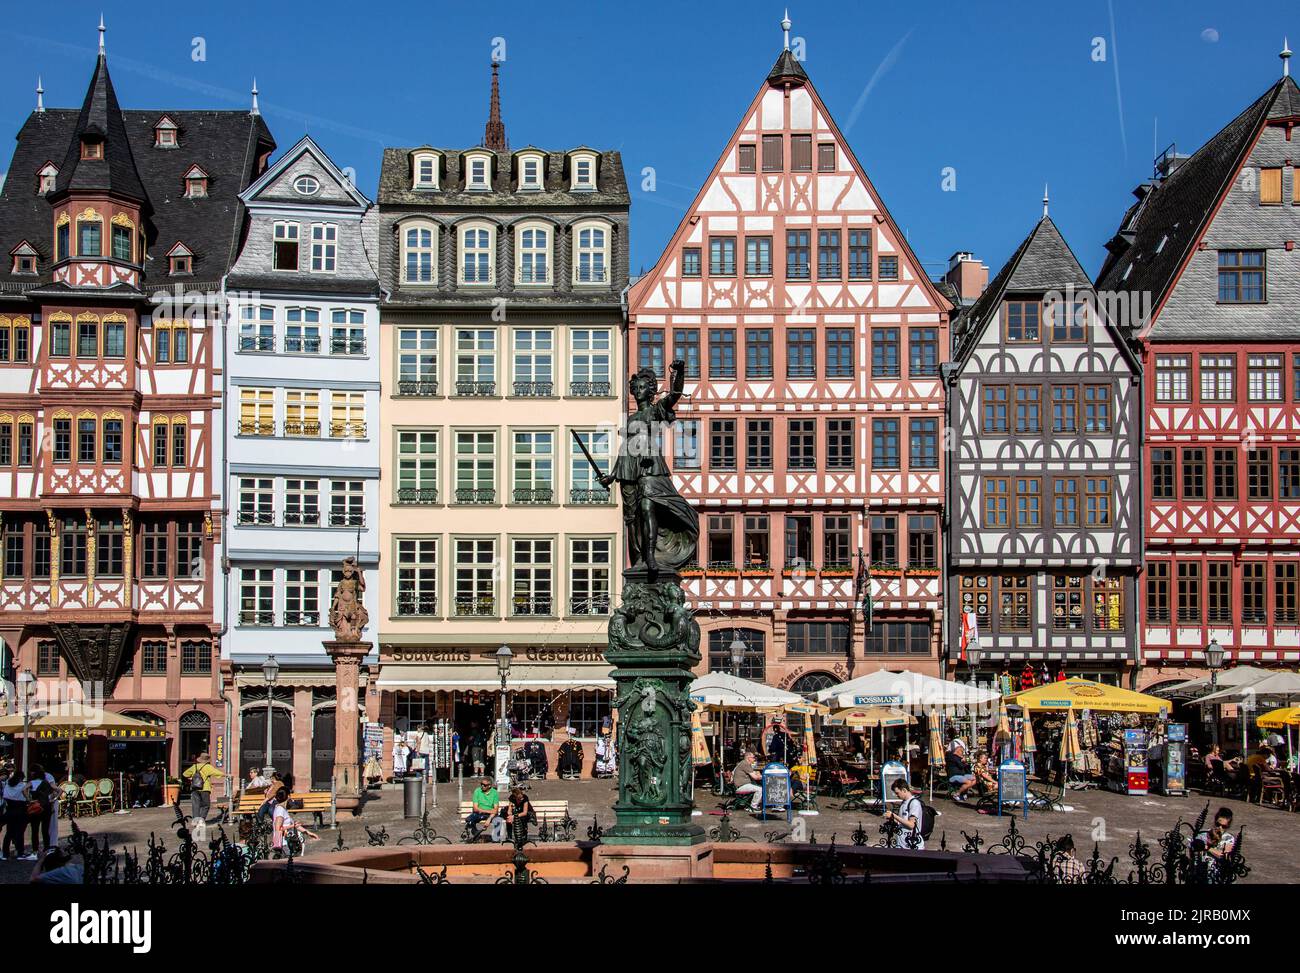 Sitzplätze im Freien in Restaurants am Römerberg, einem historischen Marktplatz, Frankfurt, Deutschland Stockfoto